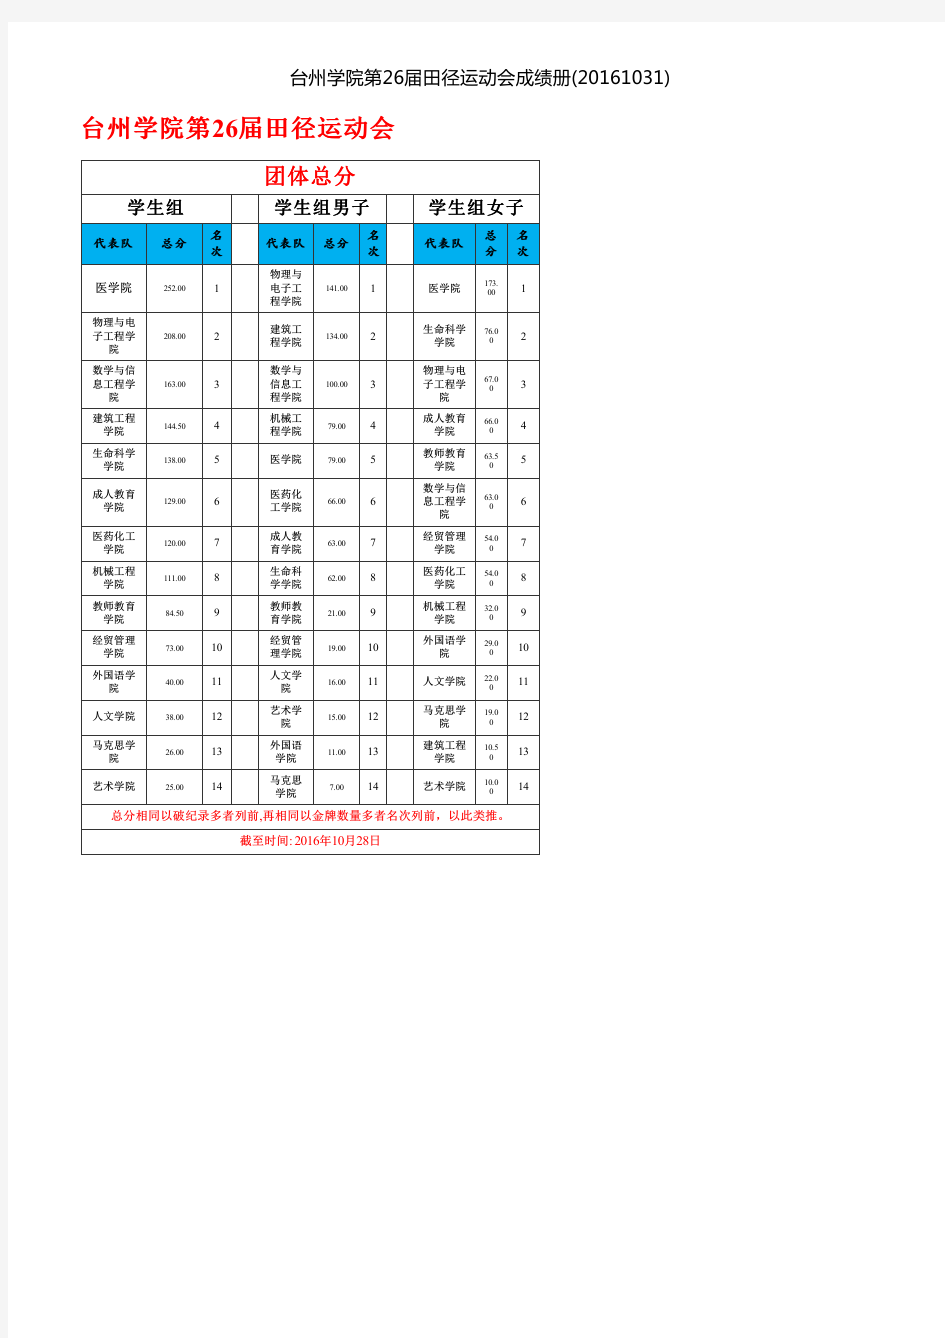 台州学院第26届田径运动会成绩册(20161031)